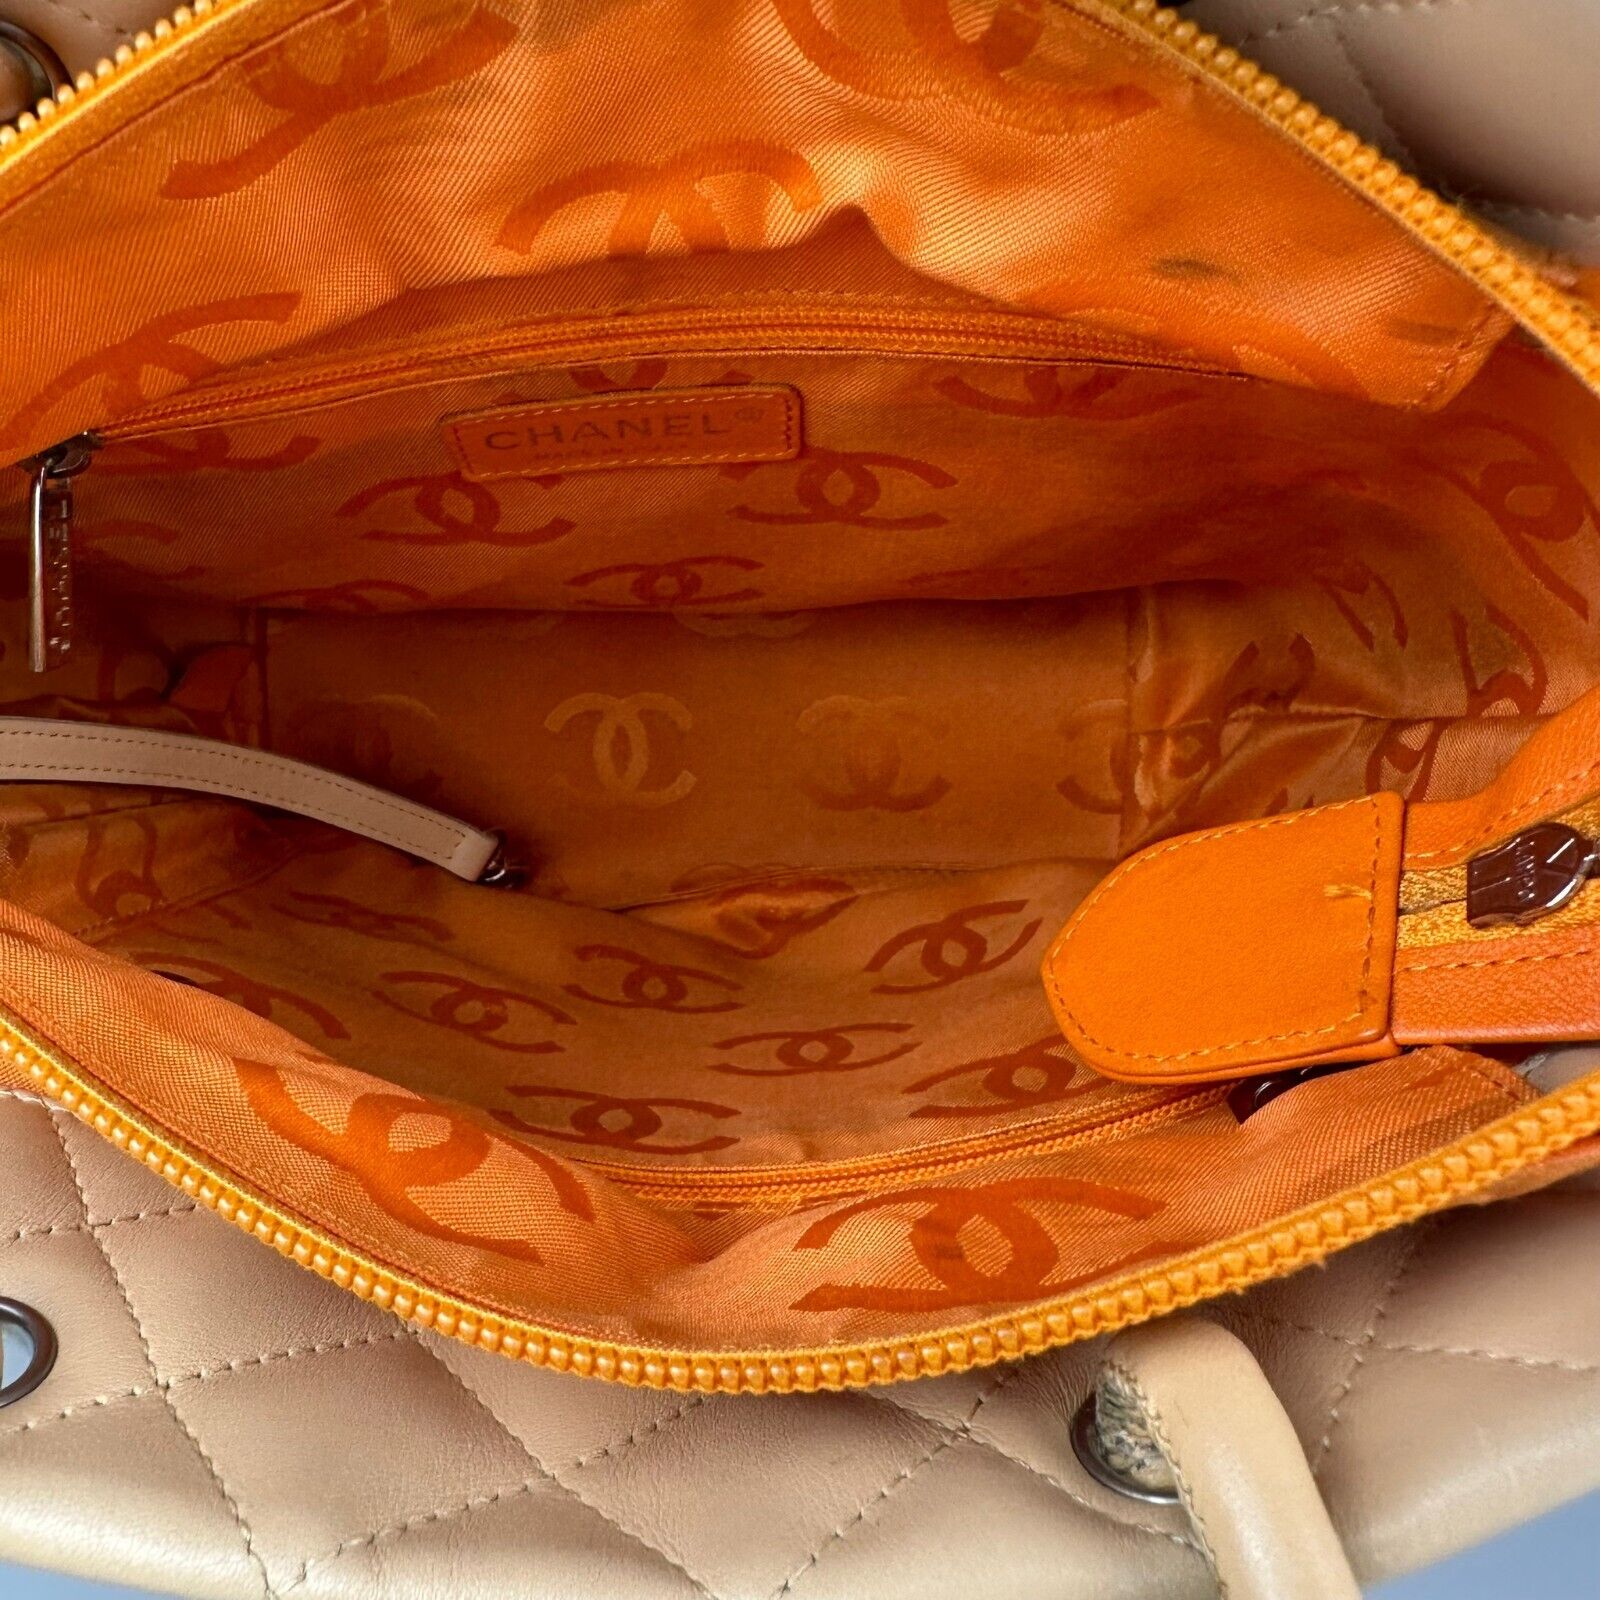 Chanel Ligne Cambon Tote Bag Mini/Small Beige